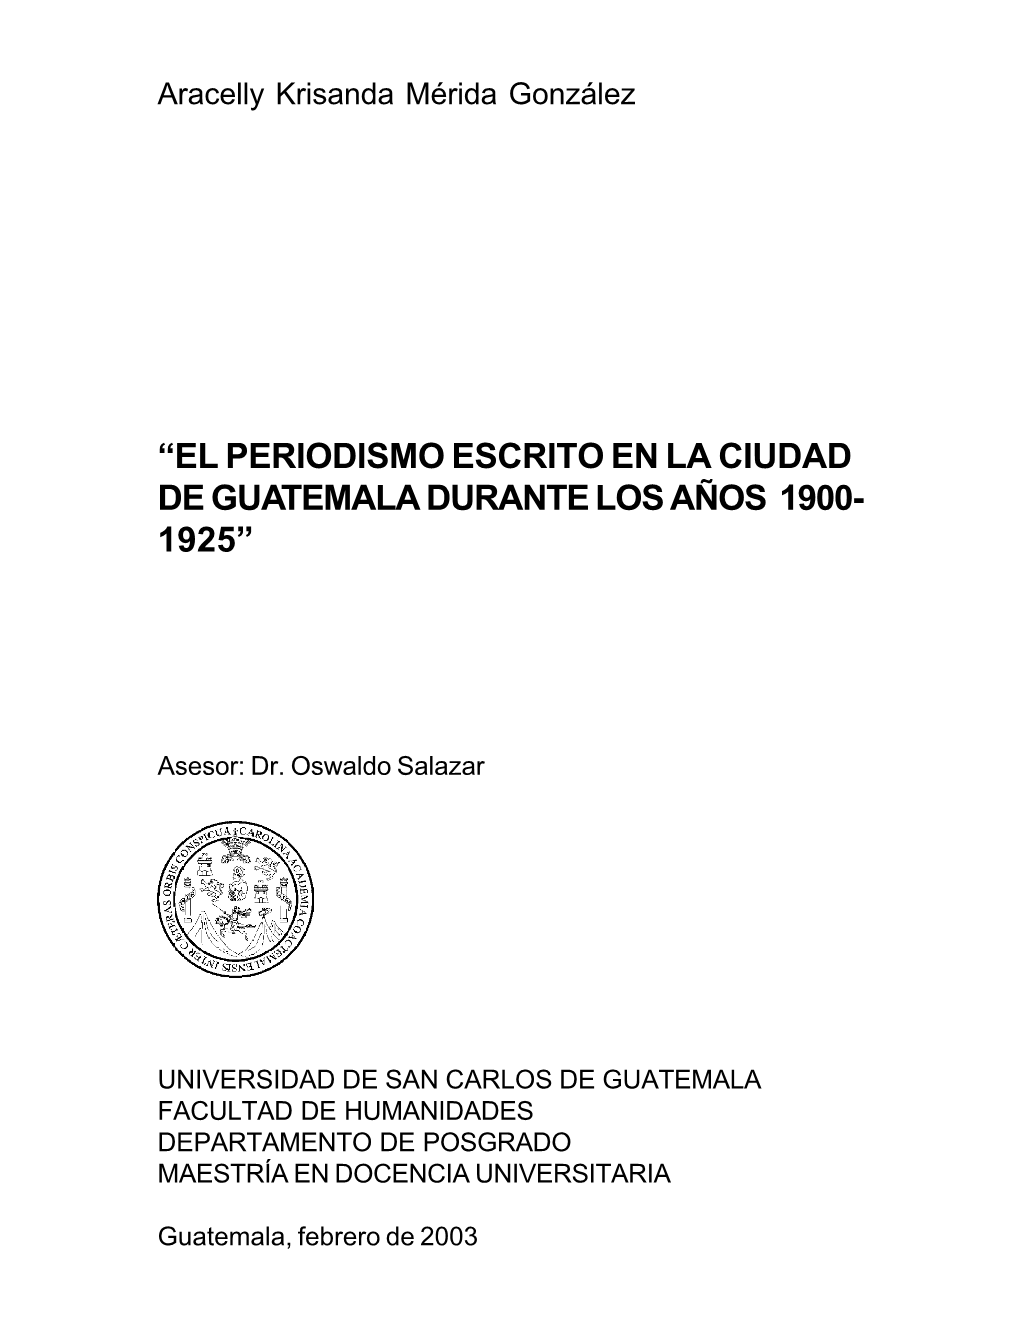 El Periodismo Escrito En La Ciudad De Guatemala Durante Los Años 1900- 1925”